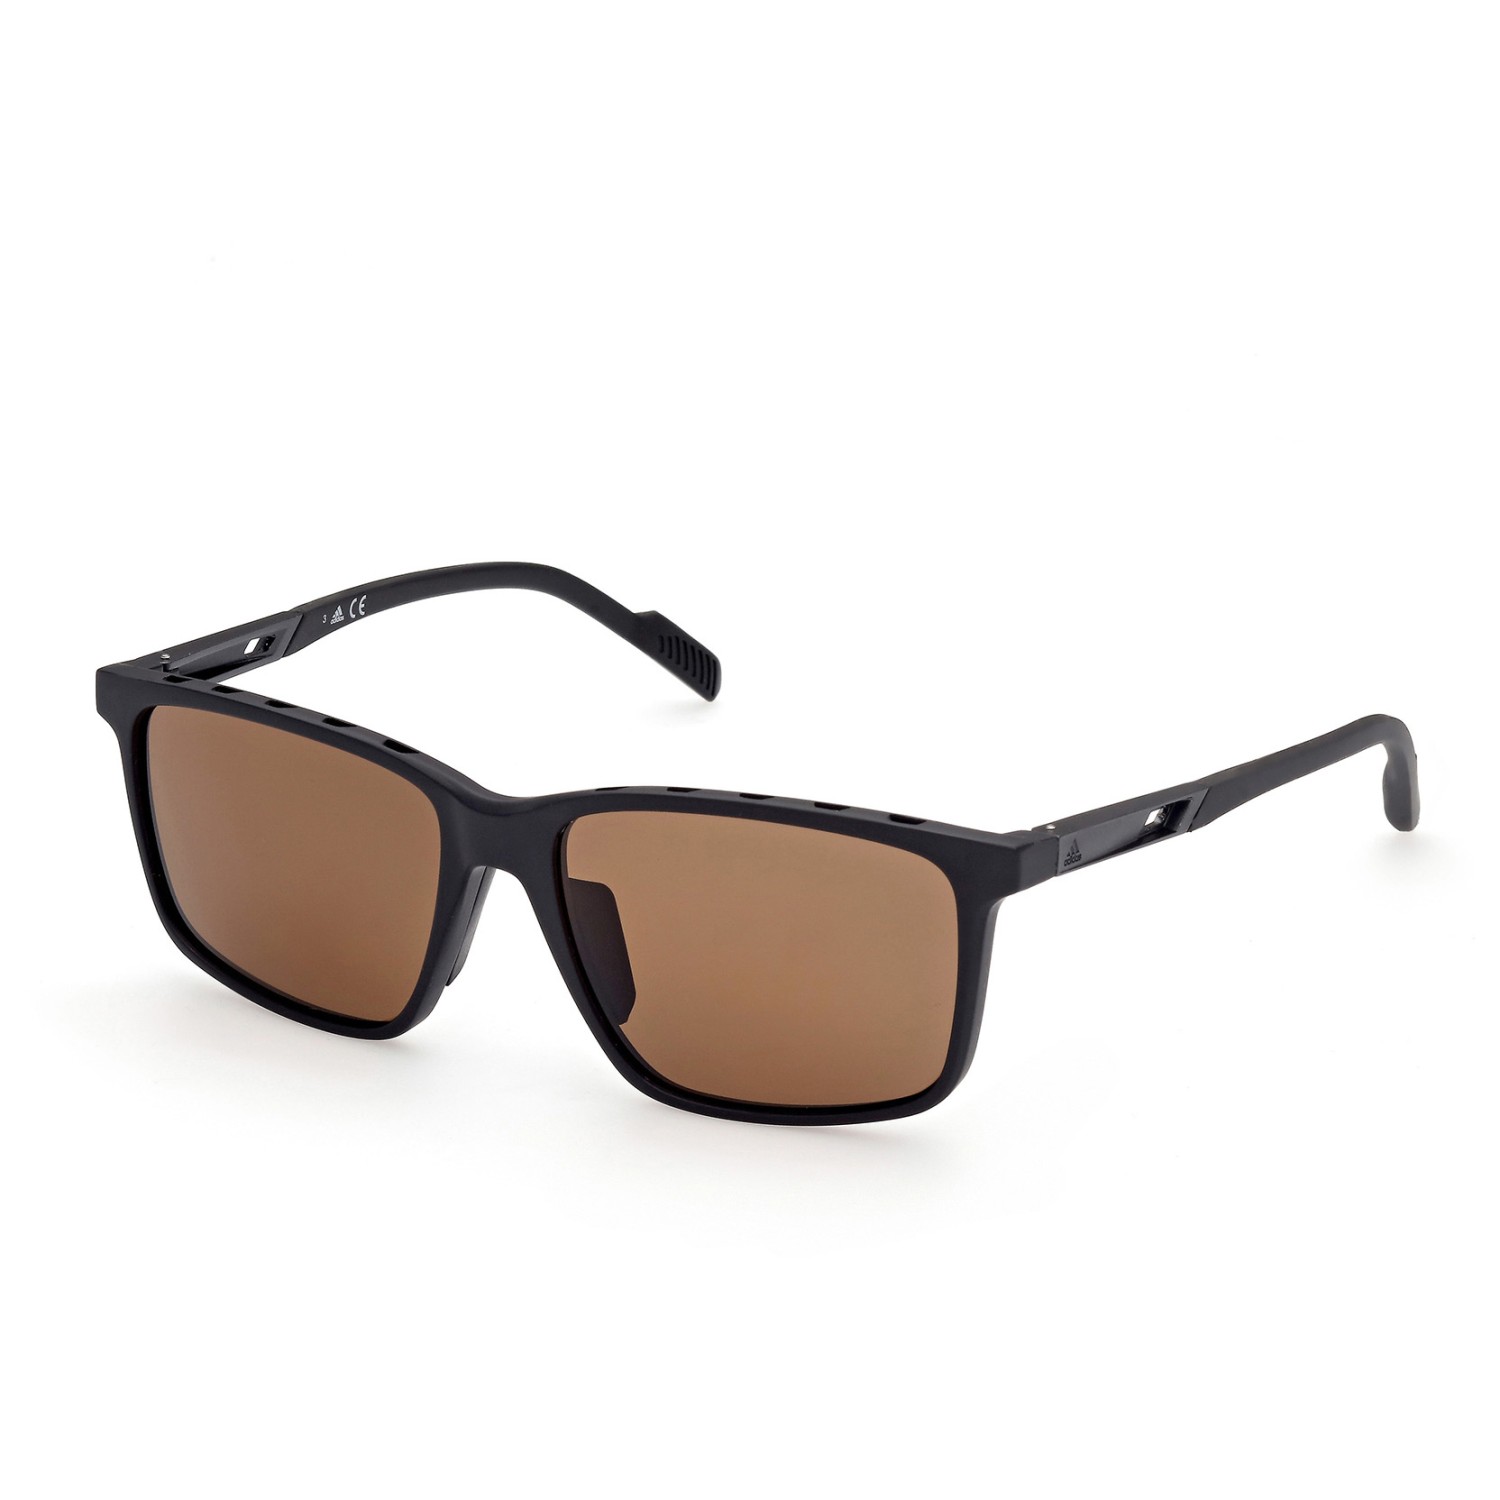 Солнцезащитные очки Adidas SP0050 Polarized Cat 3, матовый черный